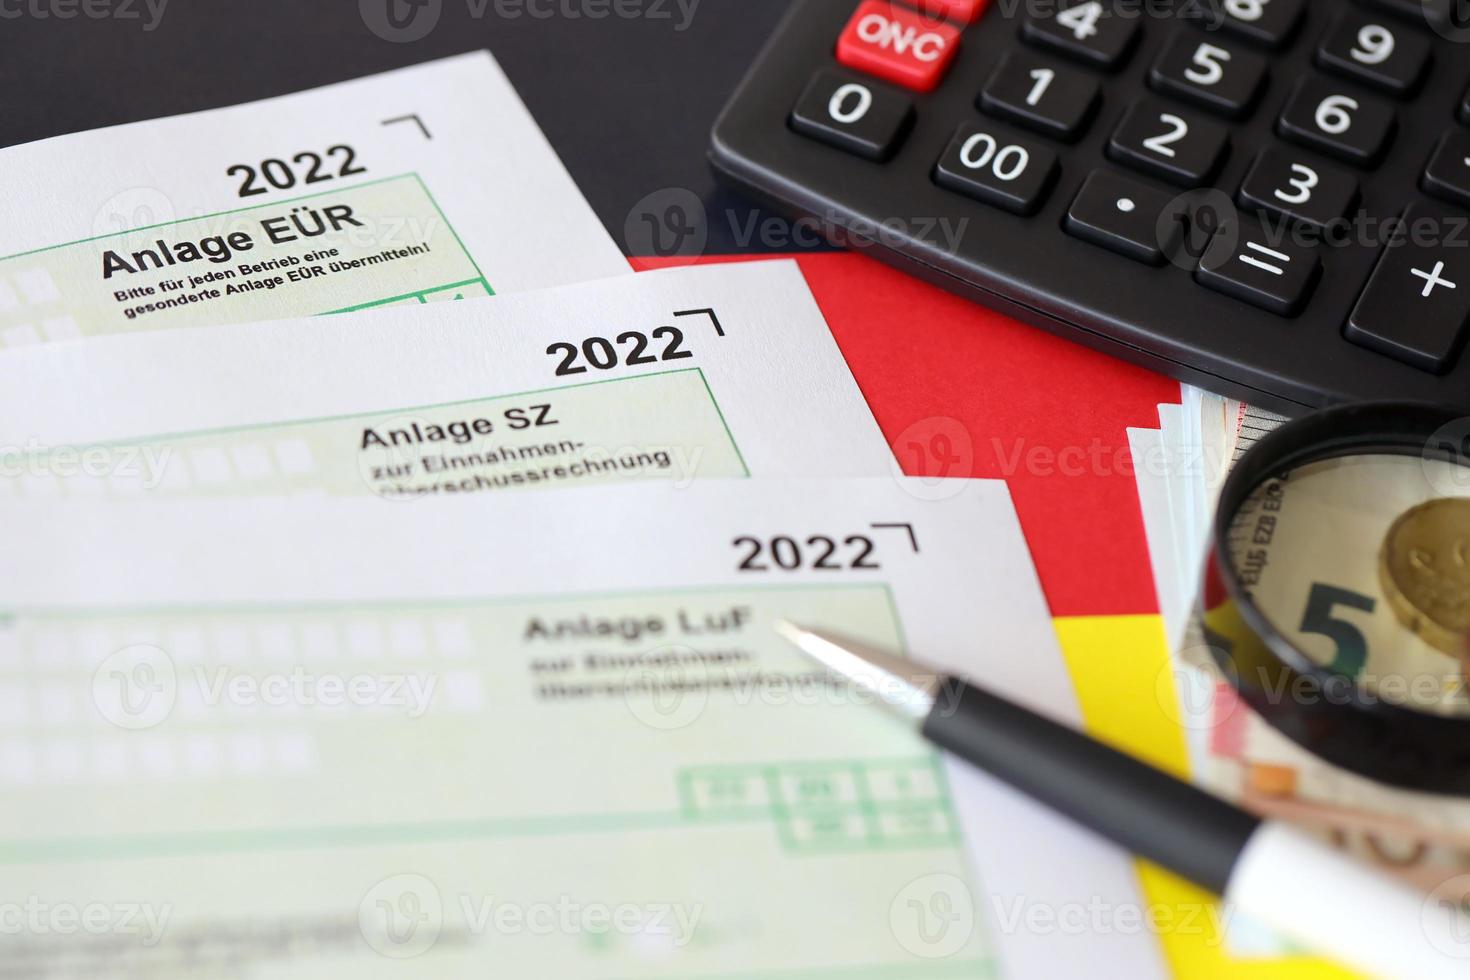 formulários em branco diferentes da declaração de imposto alemão - anlage eur, anlage sz e anlage luf. documentos encontra-se com calculadora, caneta e dinheiro europeu foto